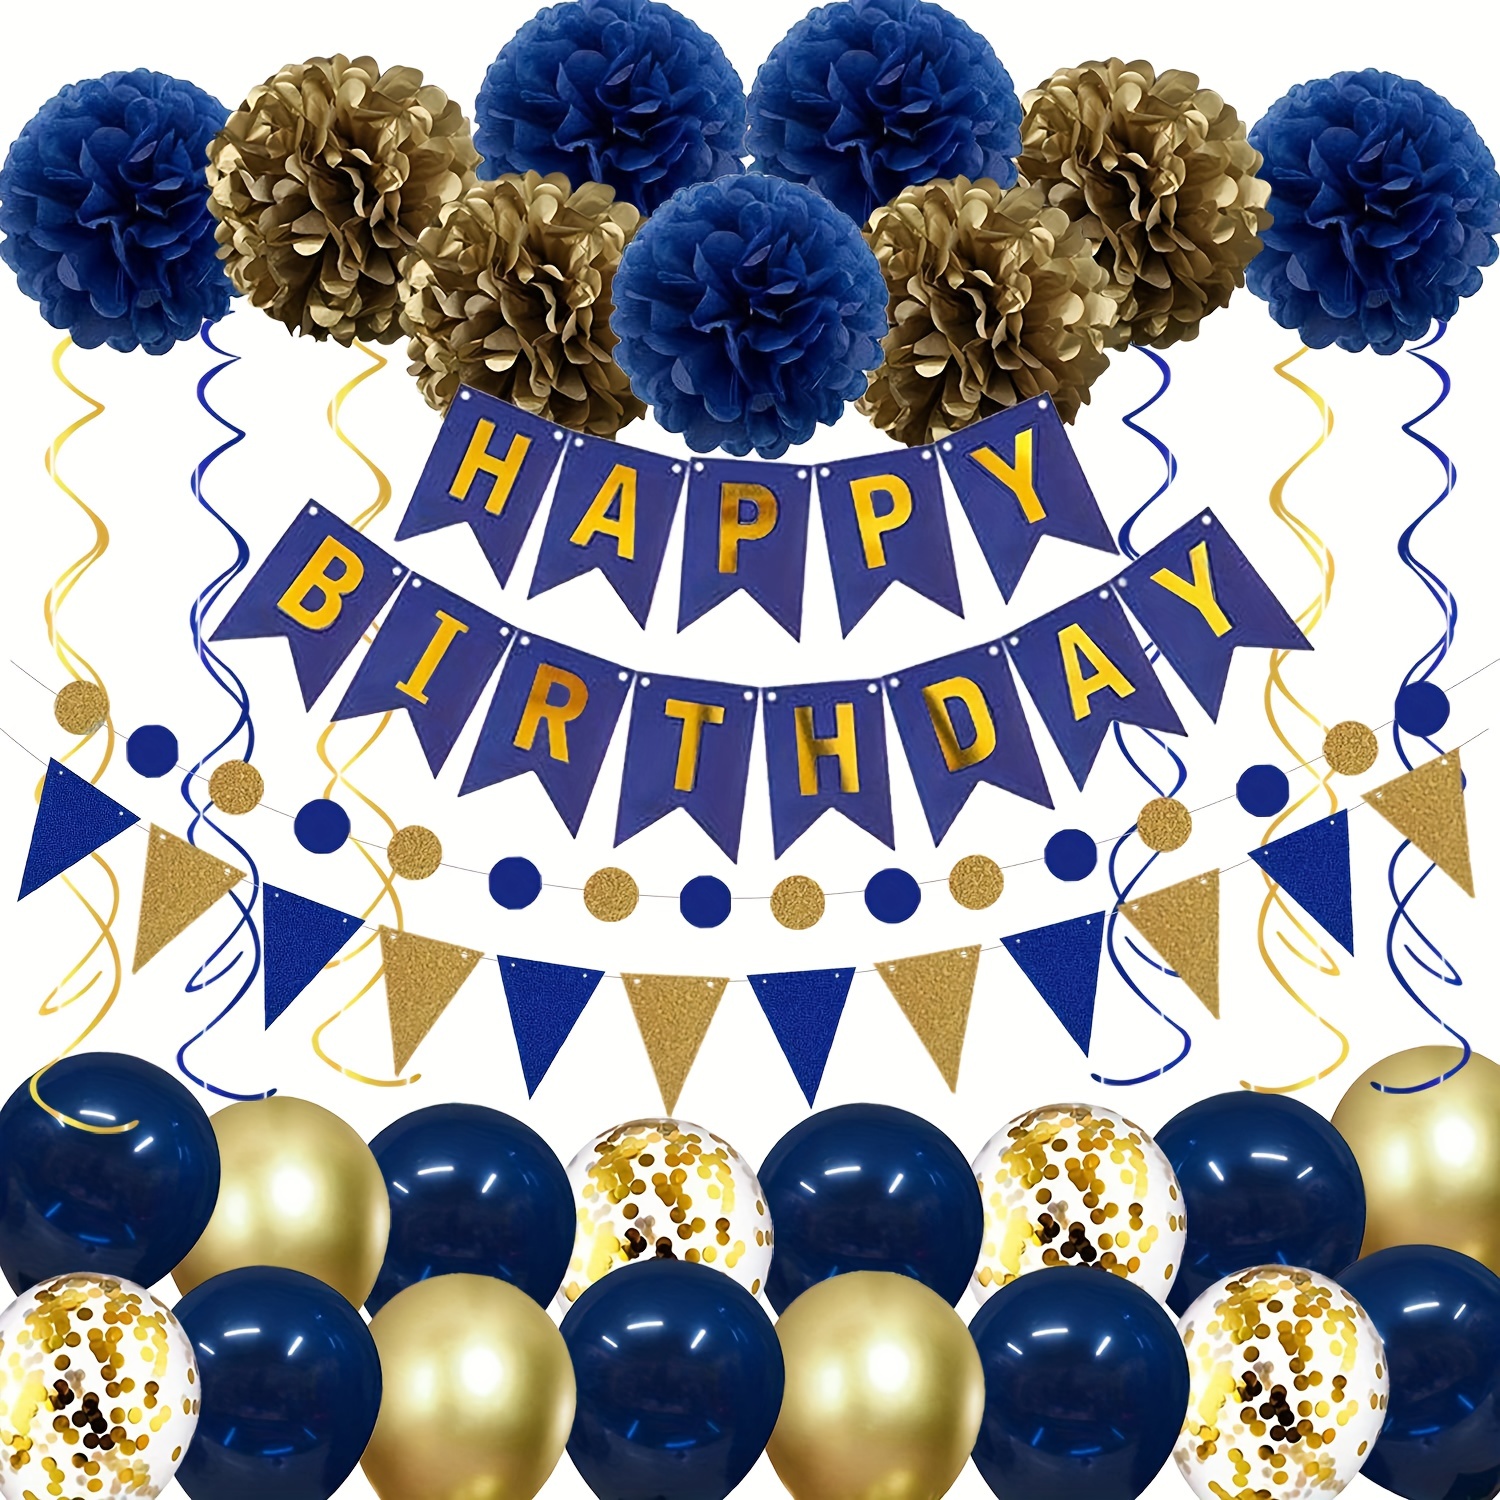  Decoraciones de 40 cumpleaños para hombres y mujeres, azul y  dorado, pancarta de cumpleaños azul marino dorado y 18 globos de feliz  cumpleaños de 40 aniversario para decoración de patio interior